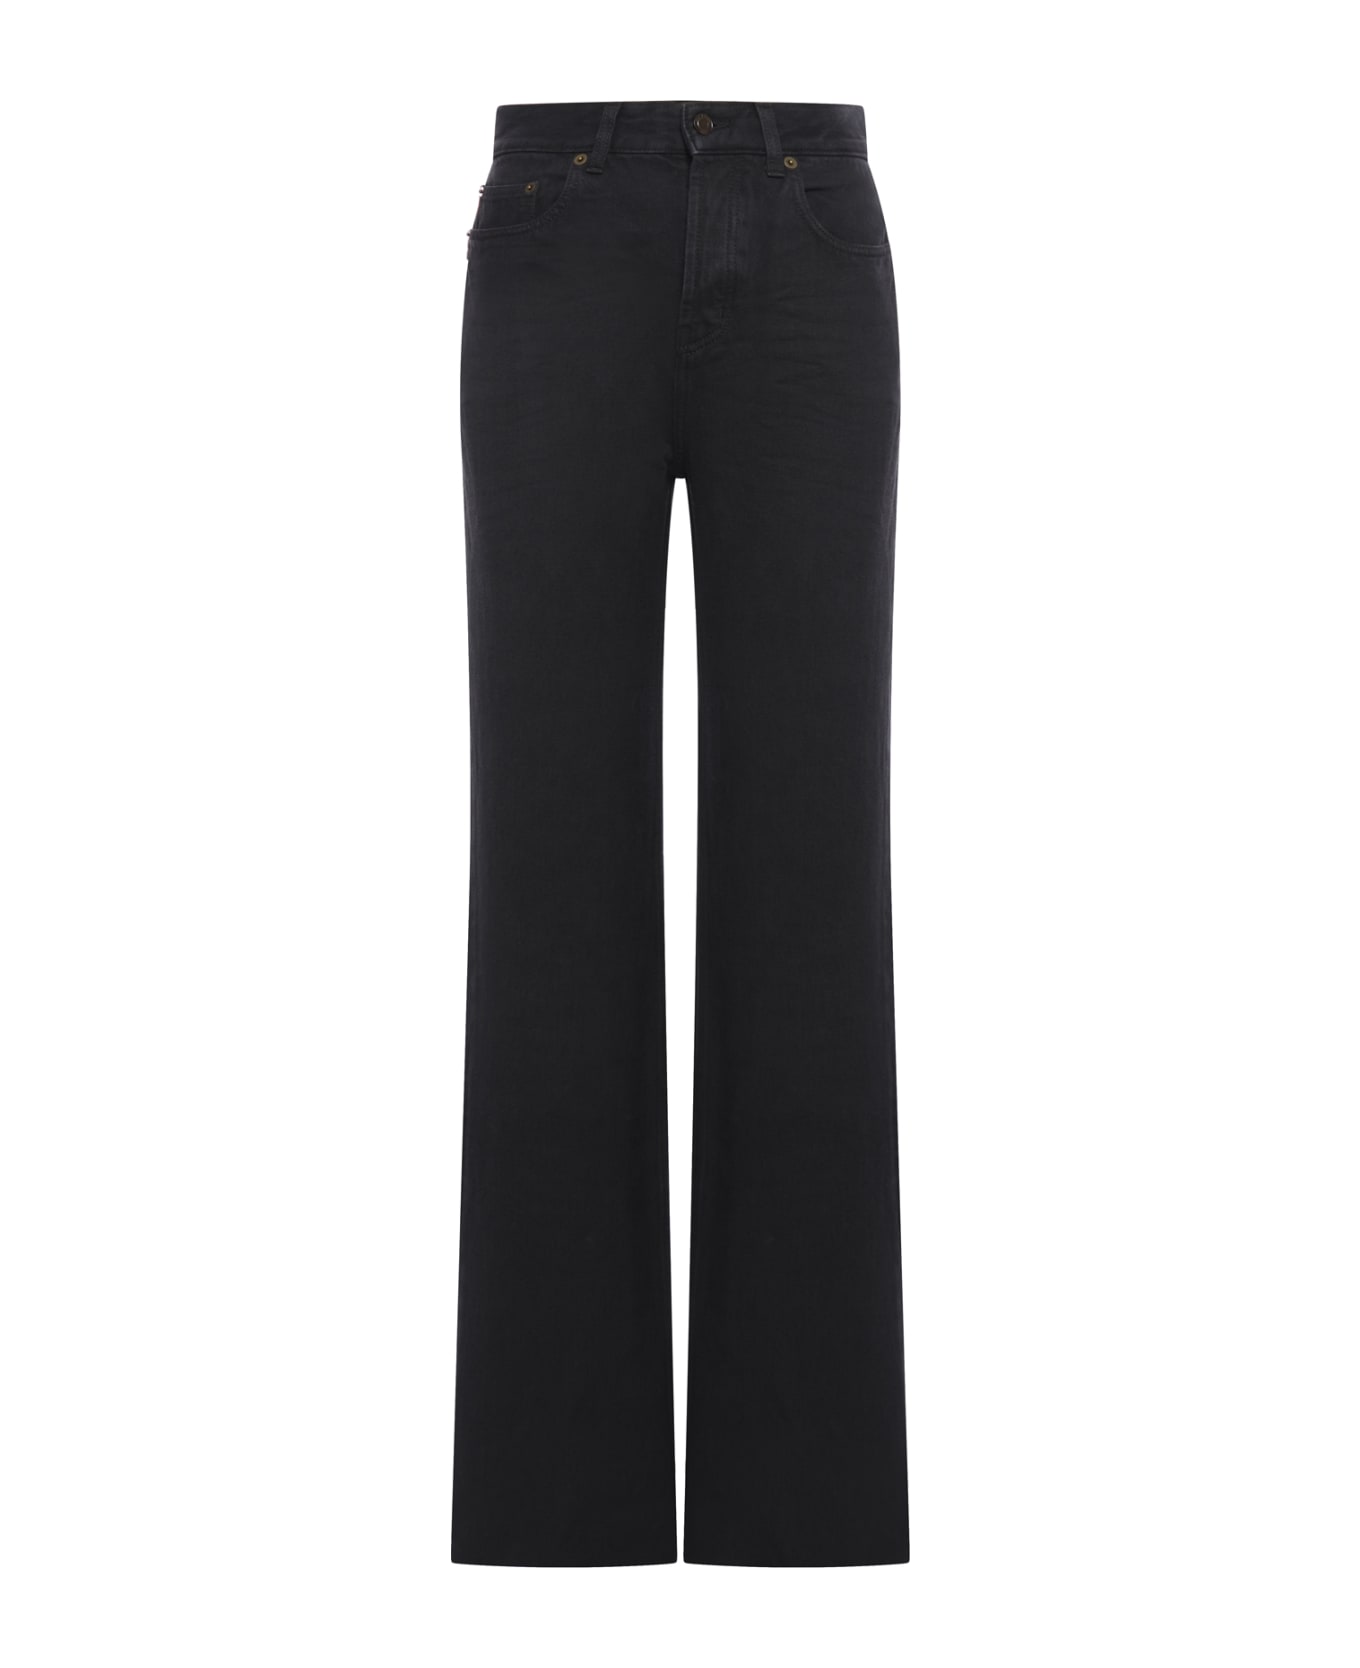 Saint Laurent Long Straight Jeans - Plain Carbon Black ボトムス